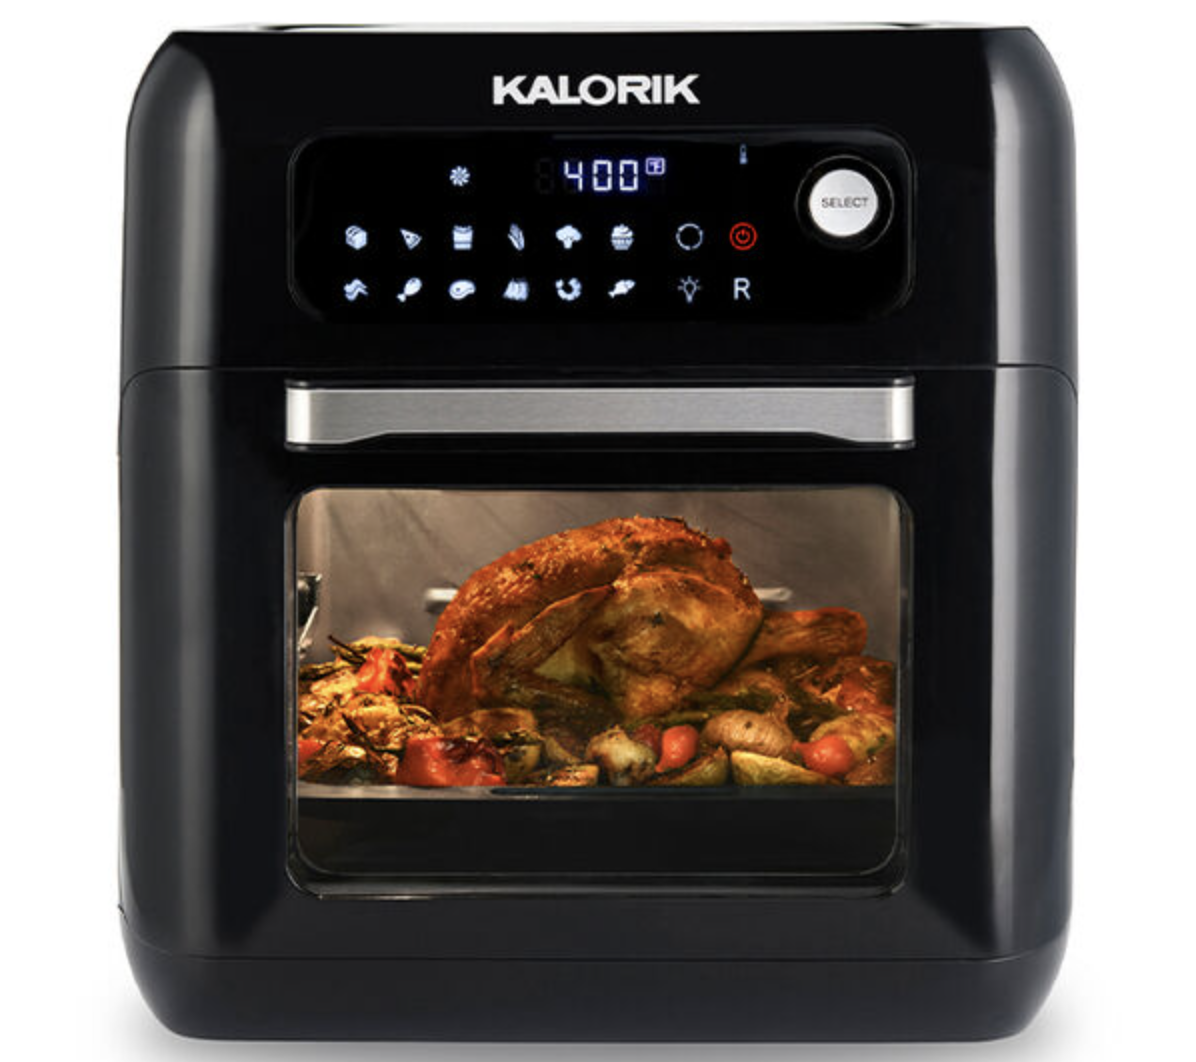 Kalorik 10-Quart Air Fryer Oven